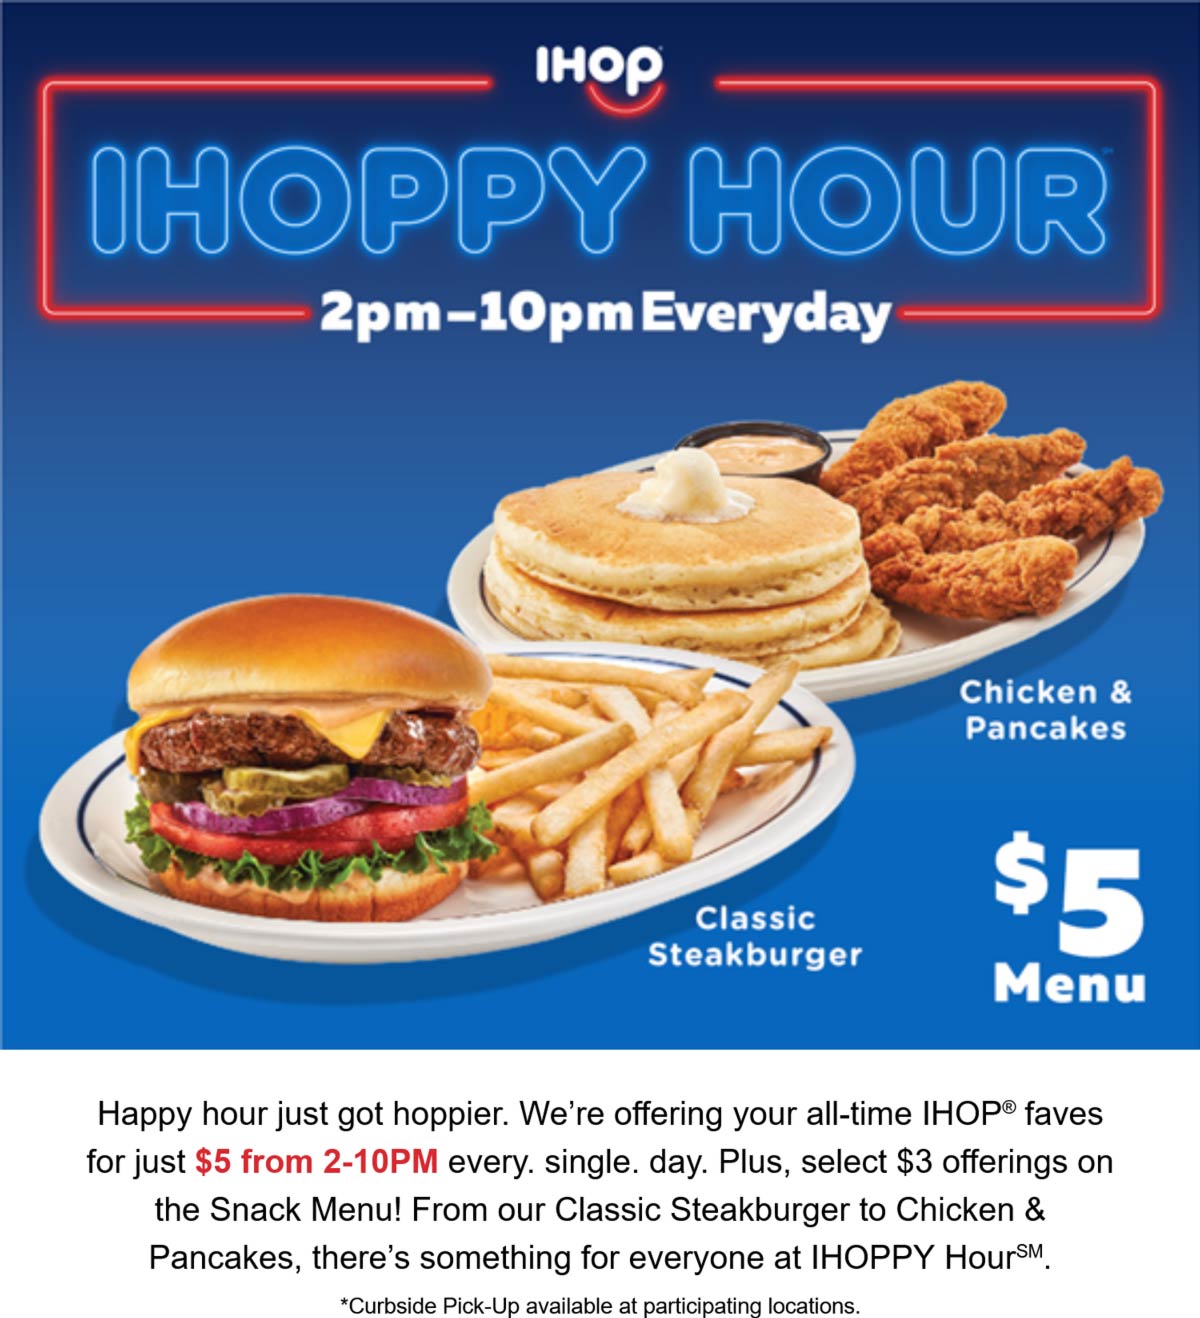 IHOP restaurants Coupon  $5 menu 2-10pm daily at IHOP restaurants #ihop 